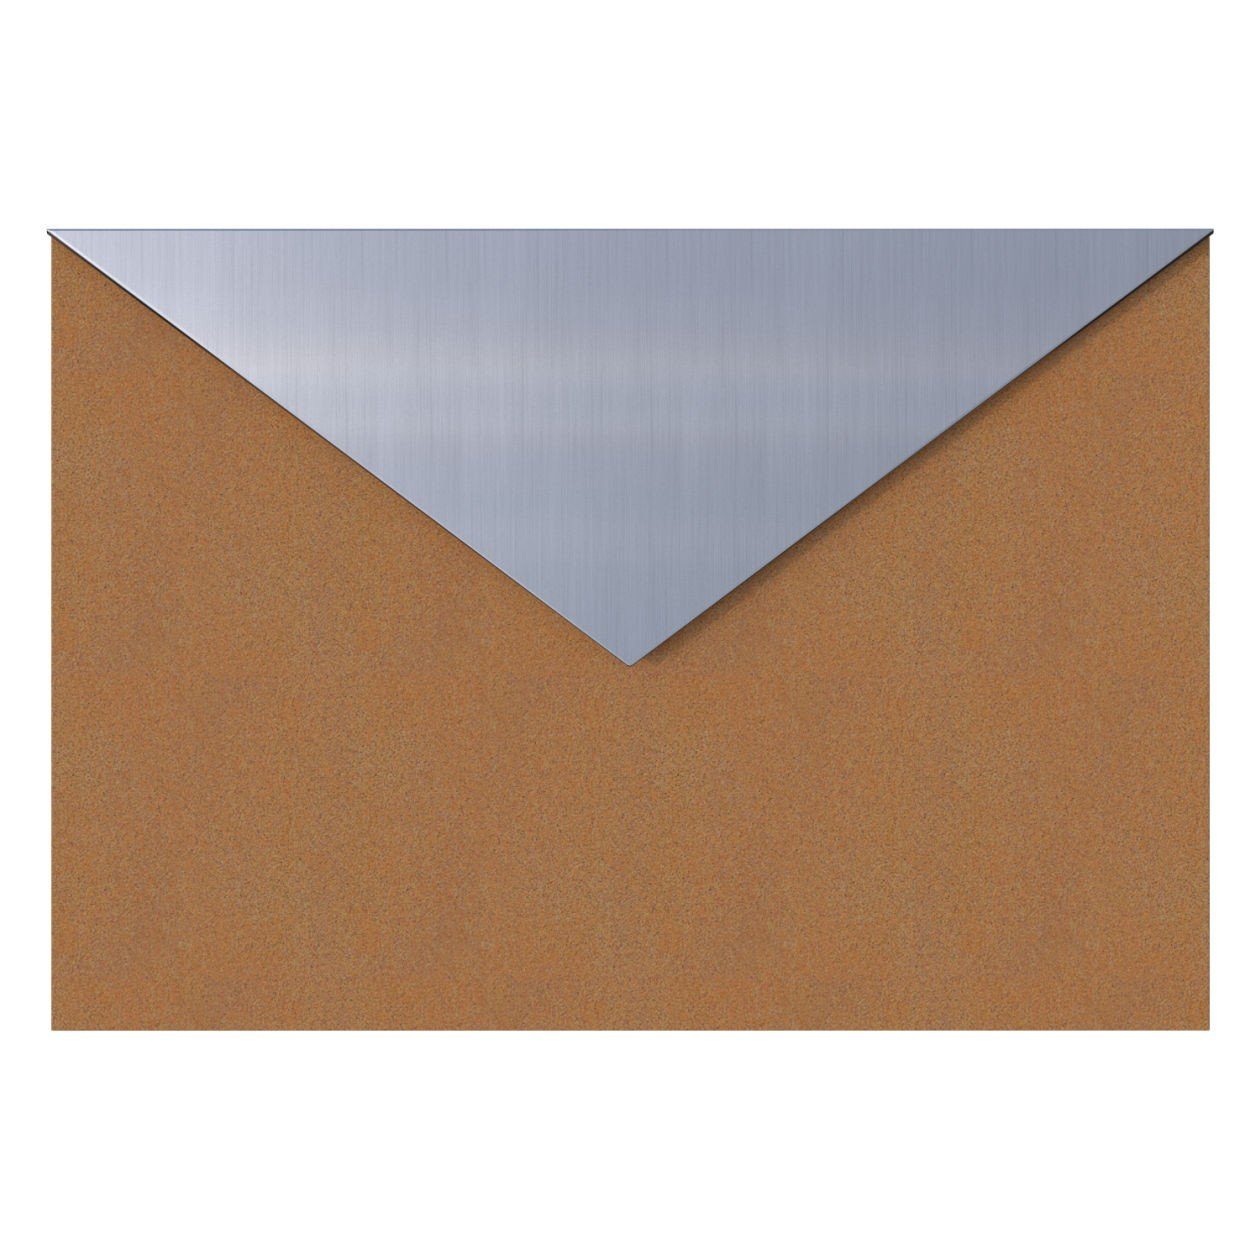 Bravios Briefkasten Letter Edelstahlklappe mit Briefkasten Rost